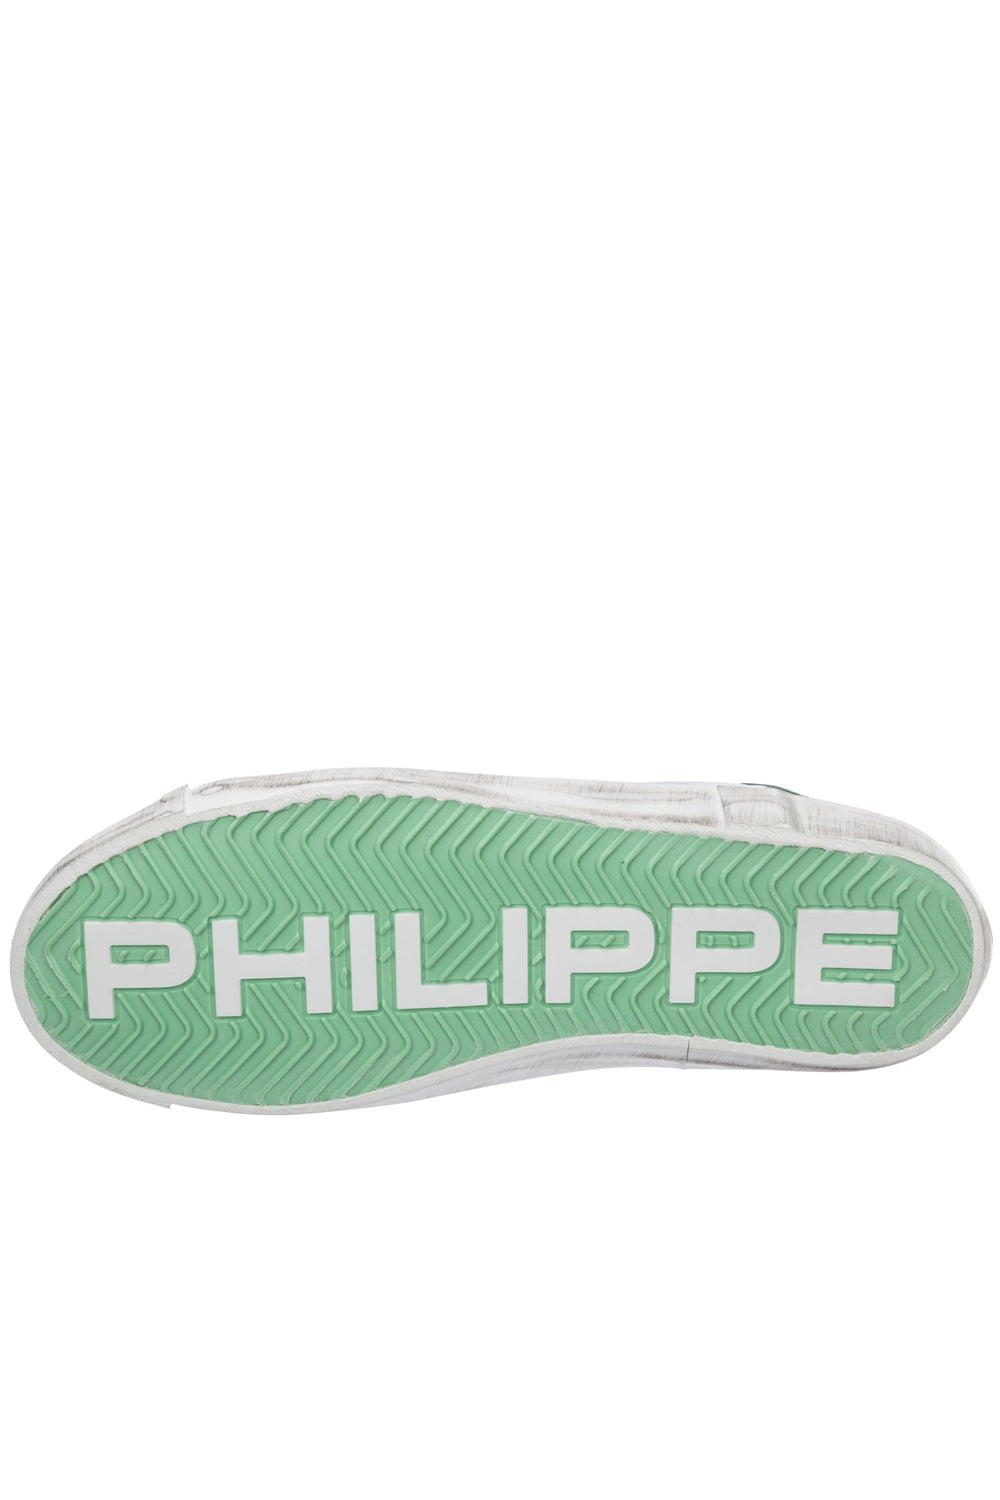 PHILIPPE MODEL Scarpe Paris X